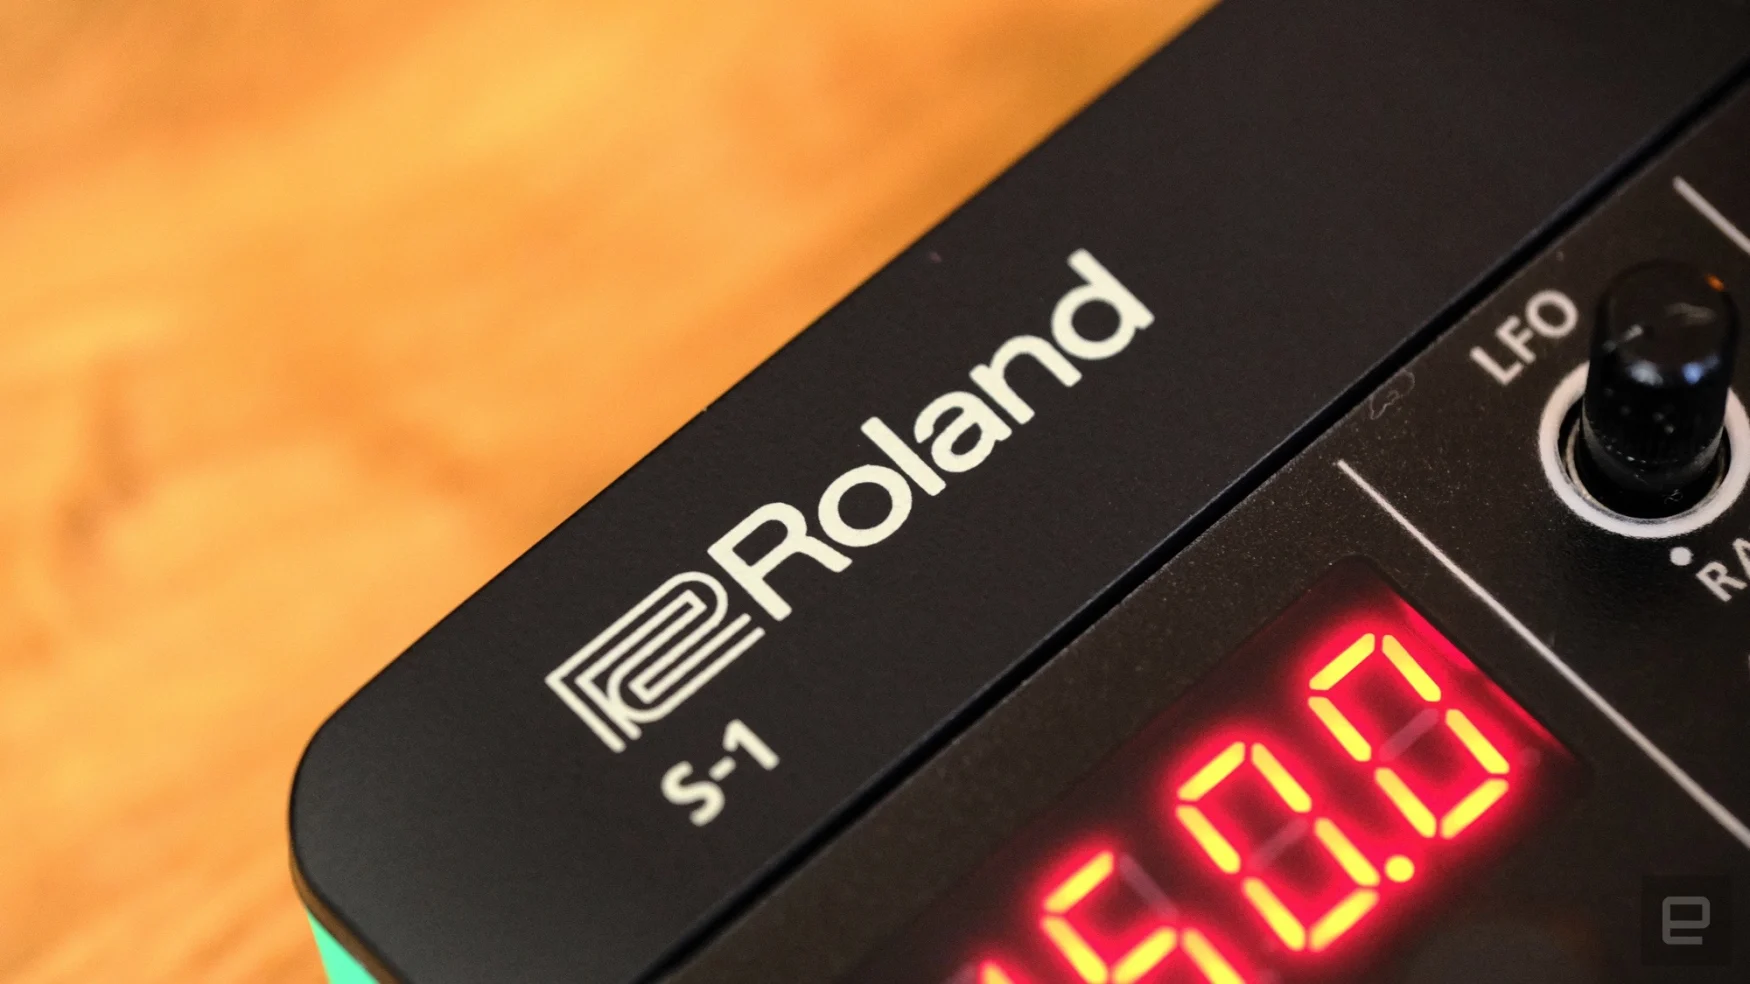 Roland S-1 Tweak Synth